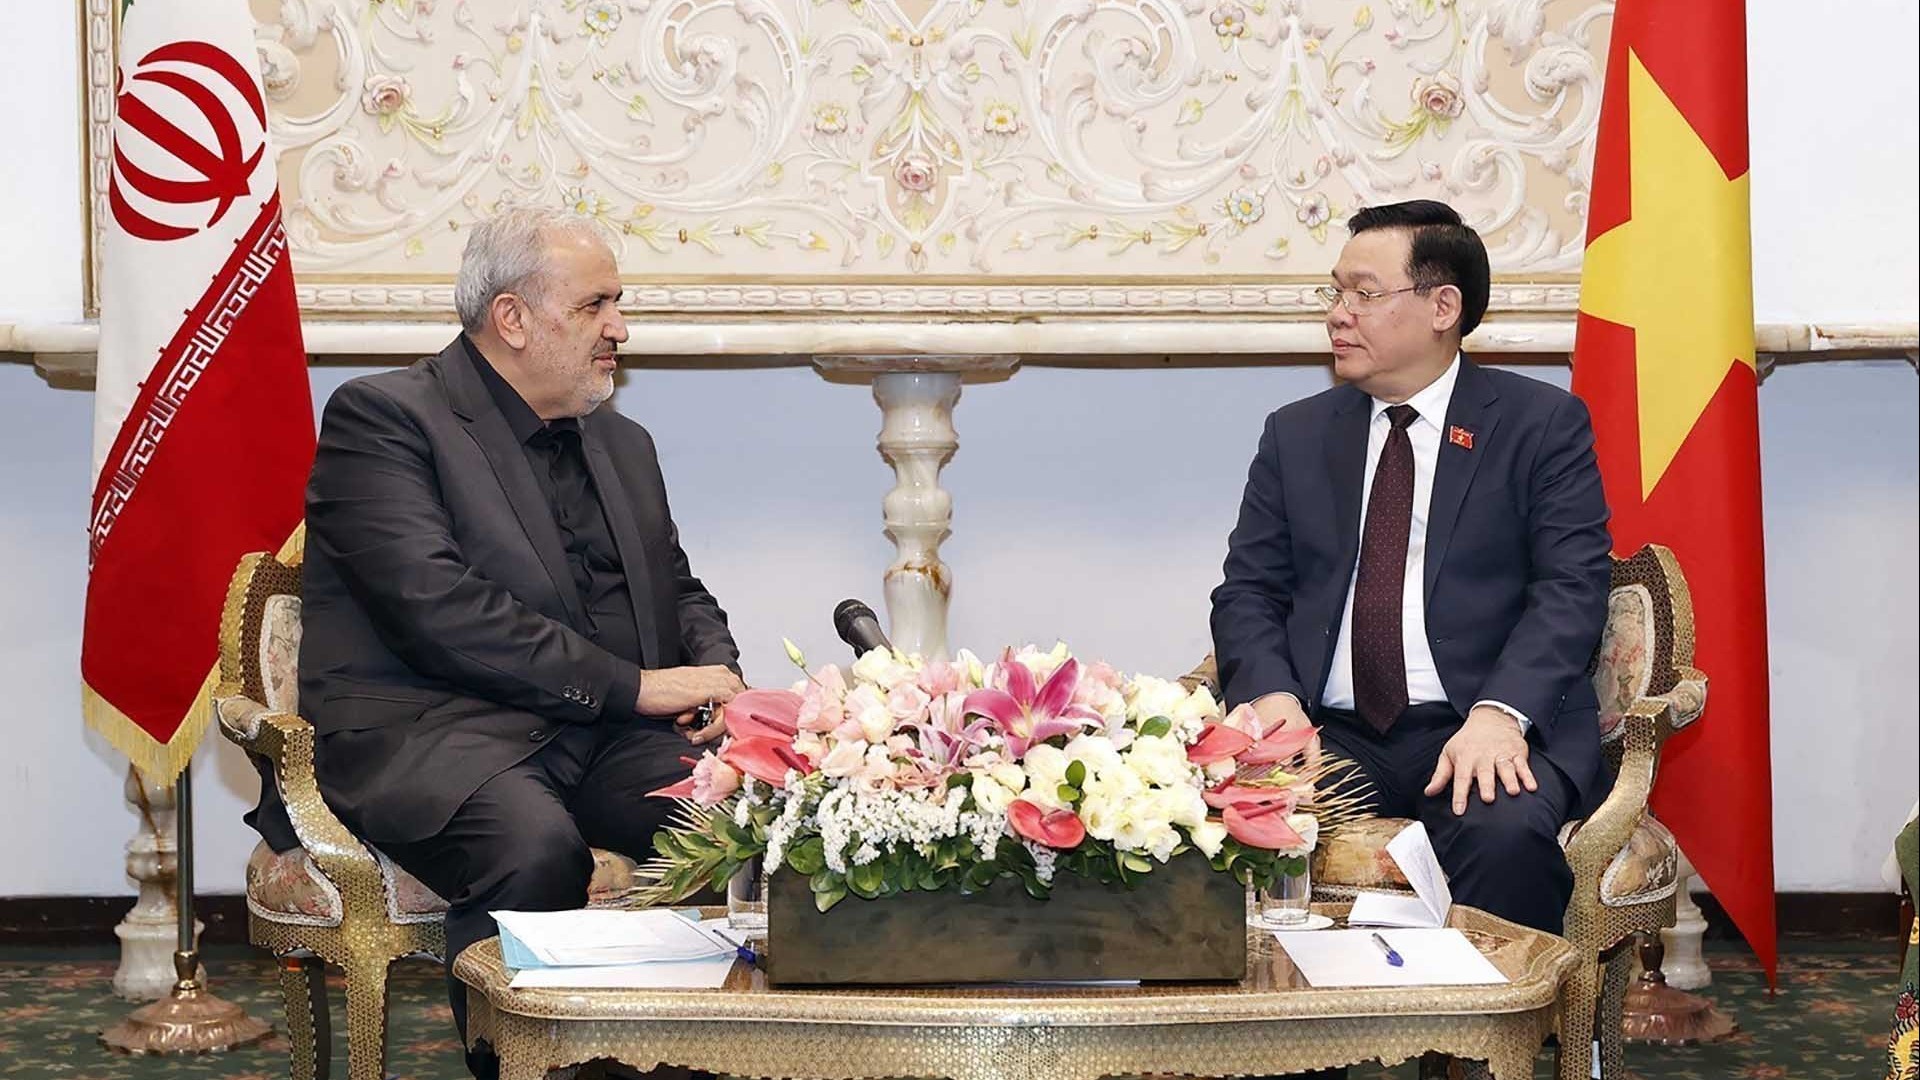 Hợp tác kinh tế, thương mại là lĩnh vực luôn được lãnh đạo Việt Nam-Iran hết sức quan tâm